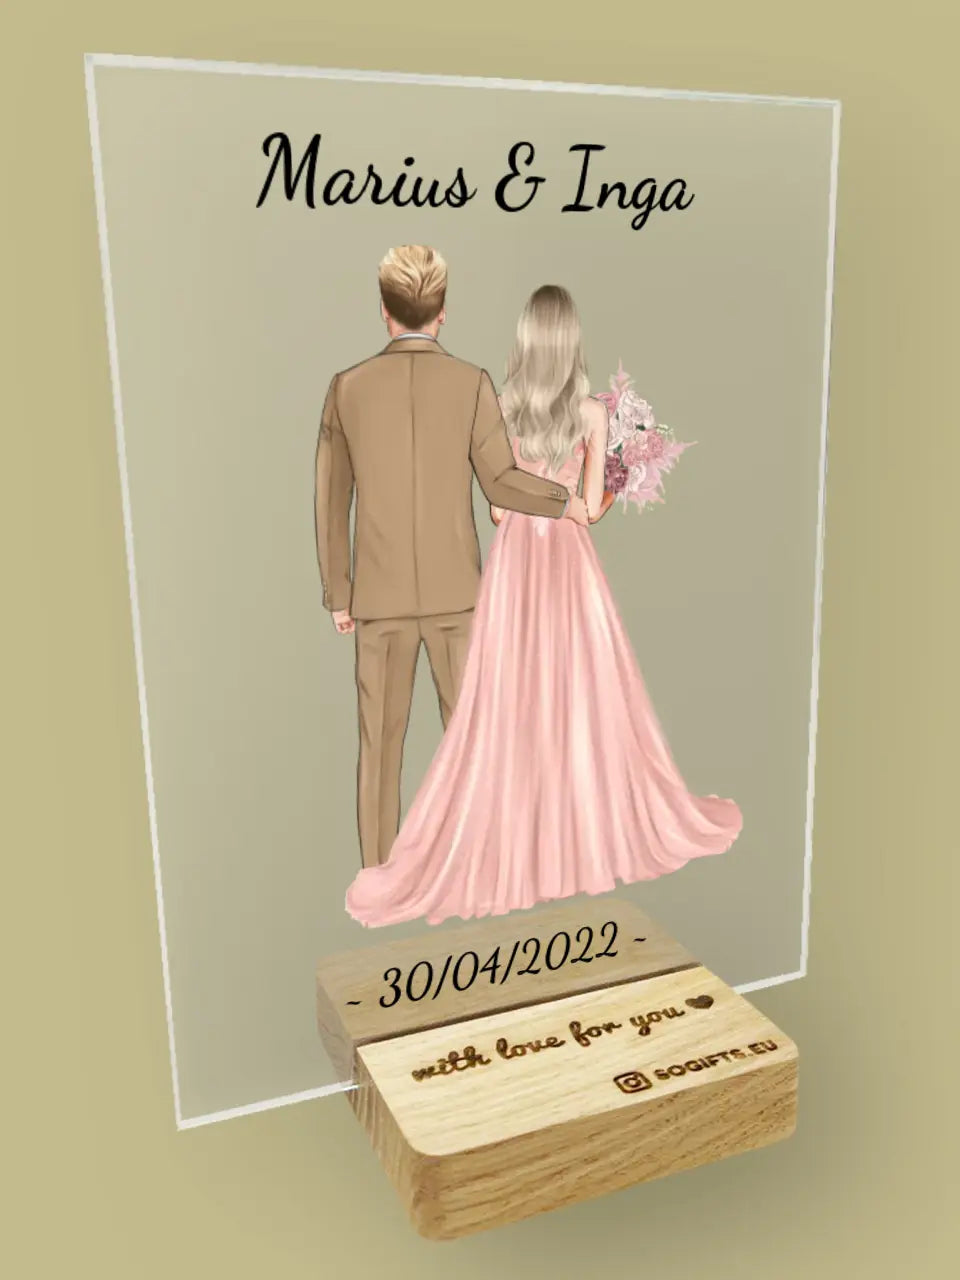 Personalizuotas jaunikio ir nuotakos vestuvių stiklinis posteris su jūsų data ir vardais